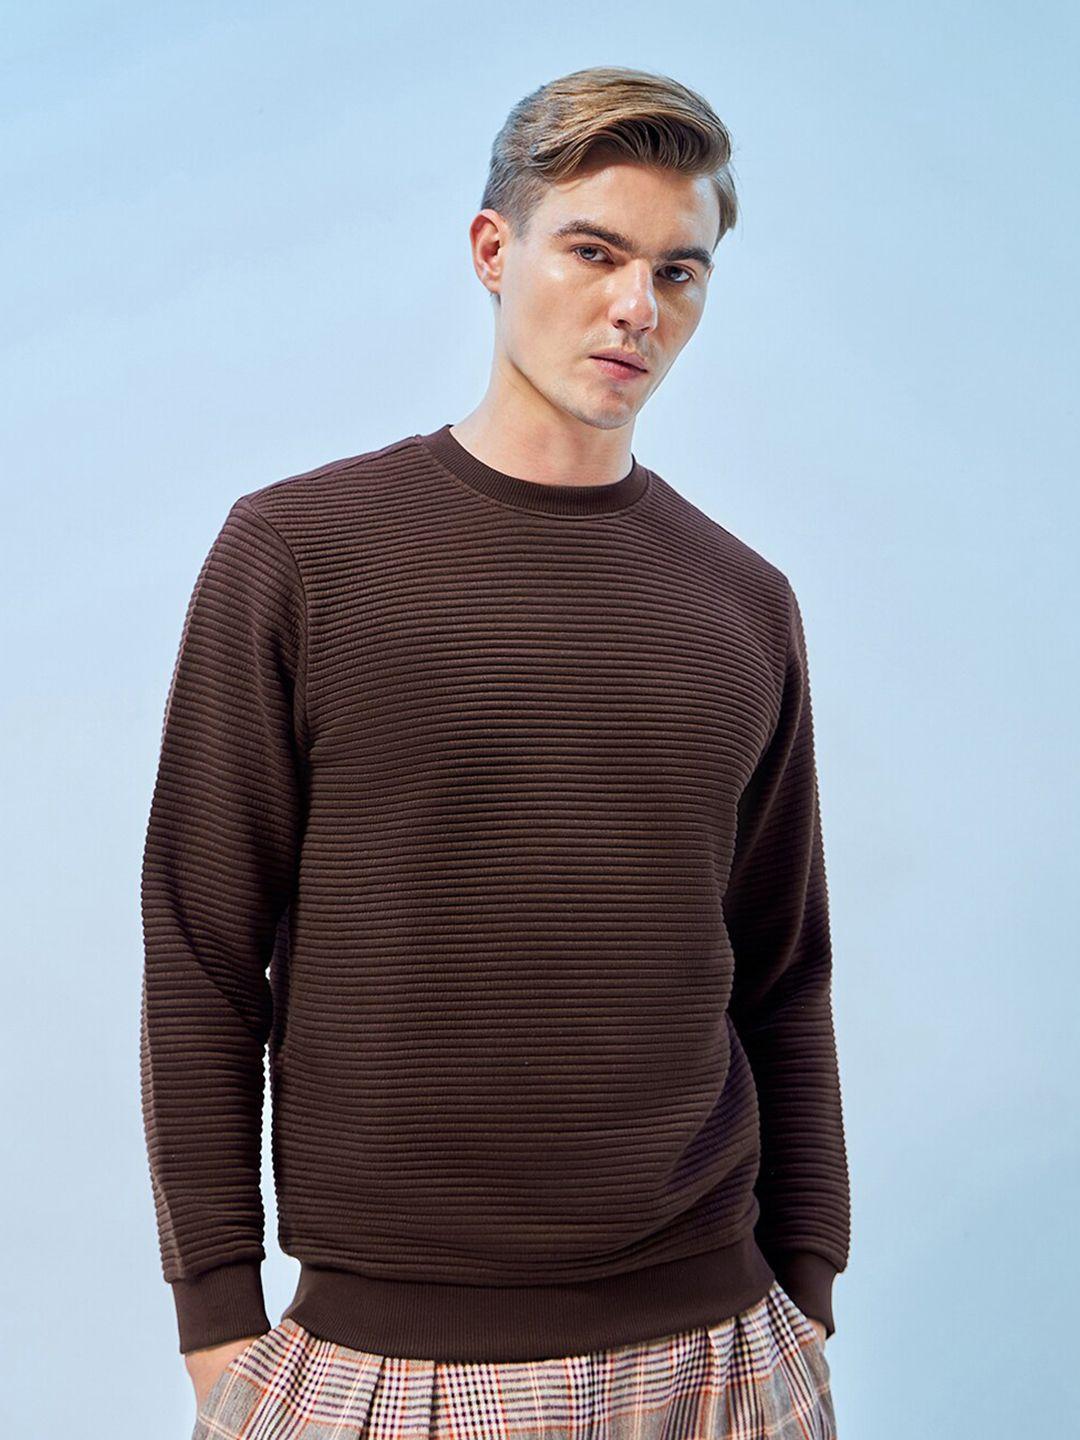 bewakoof-round-neck-pullover-sweatshirt